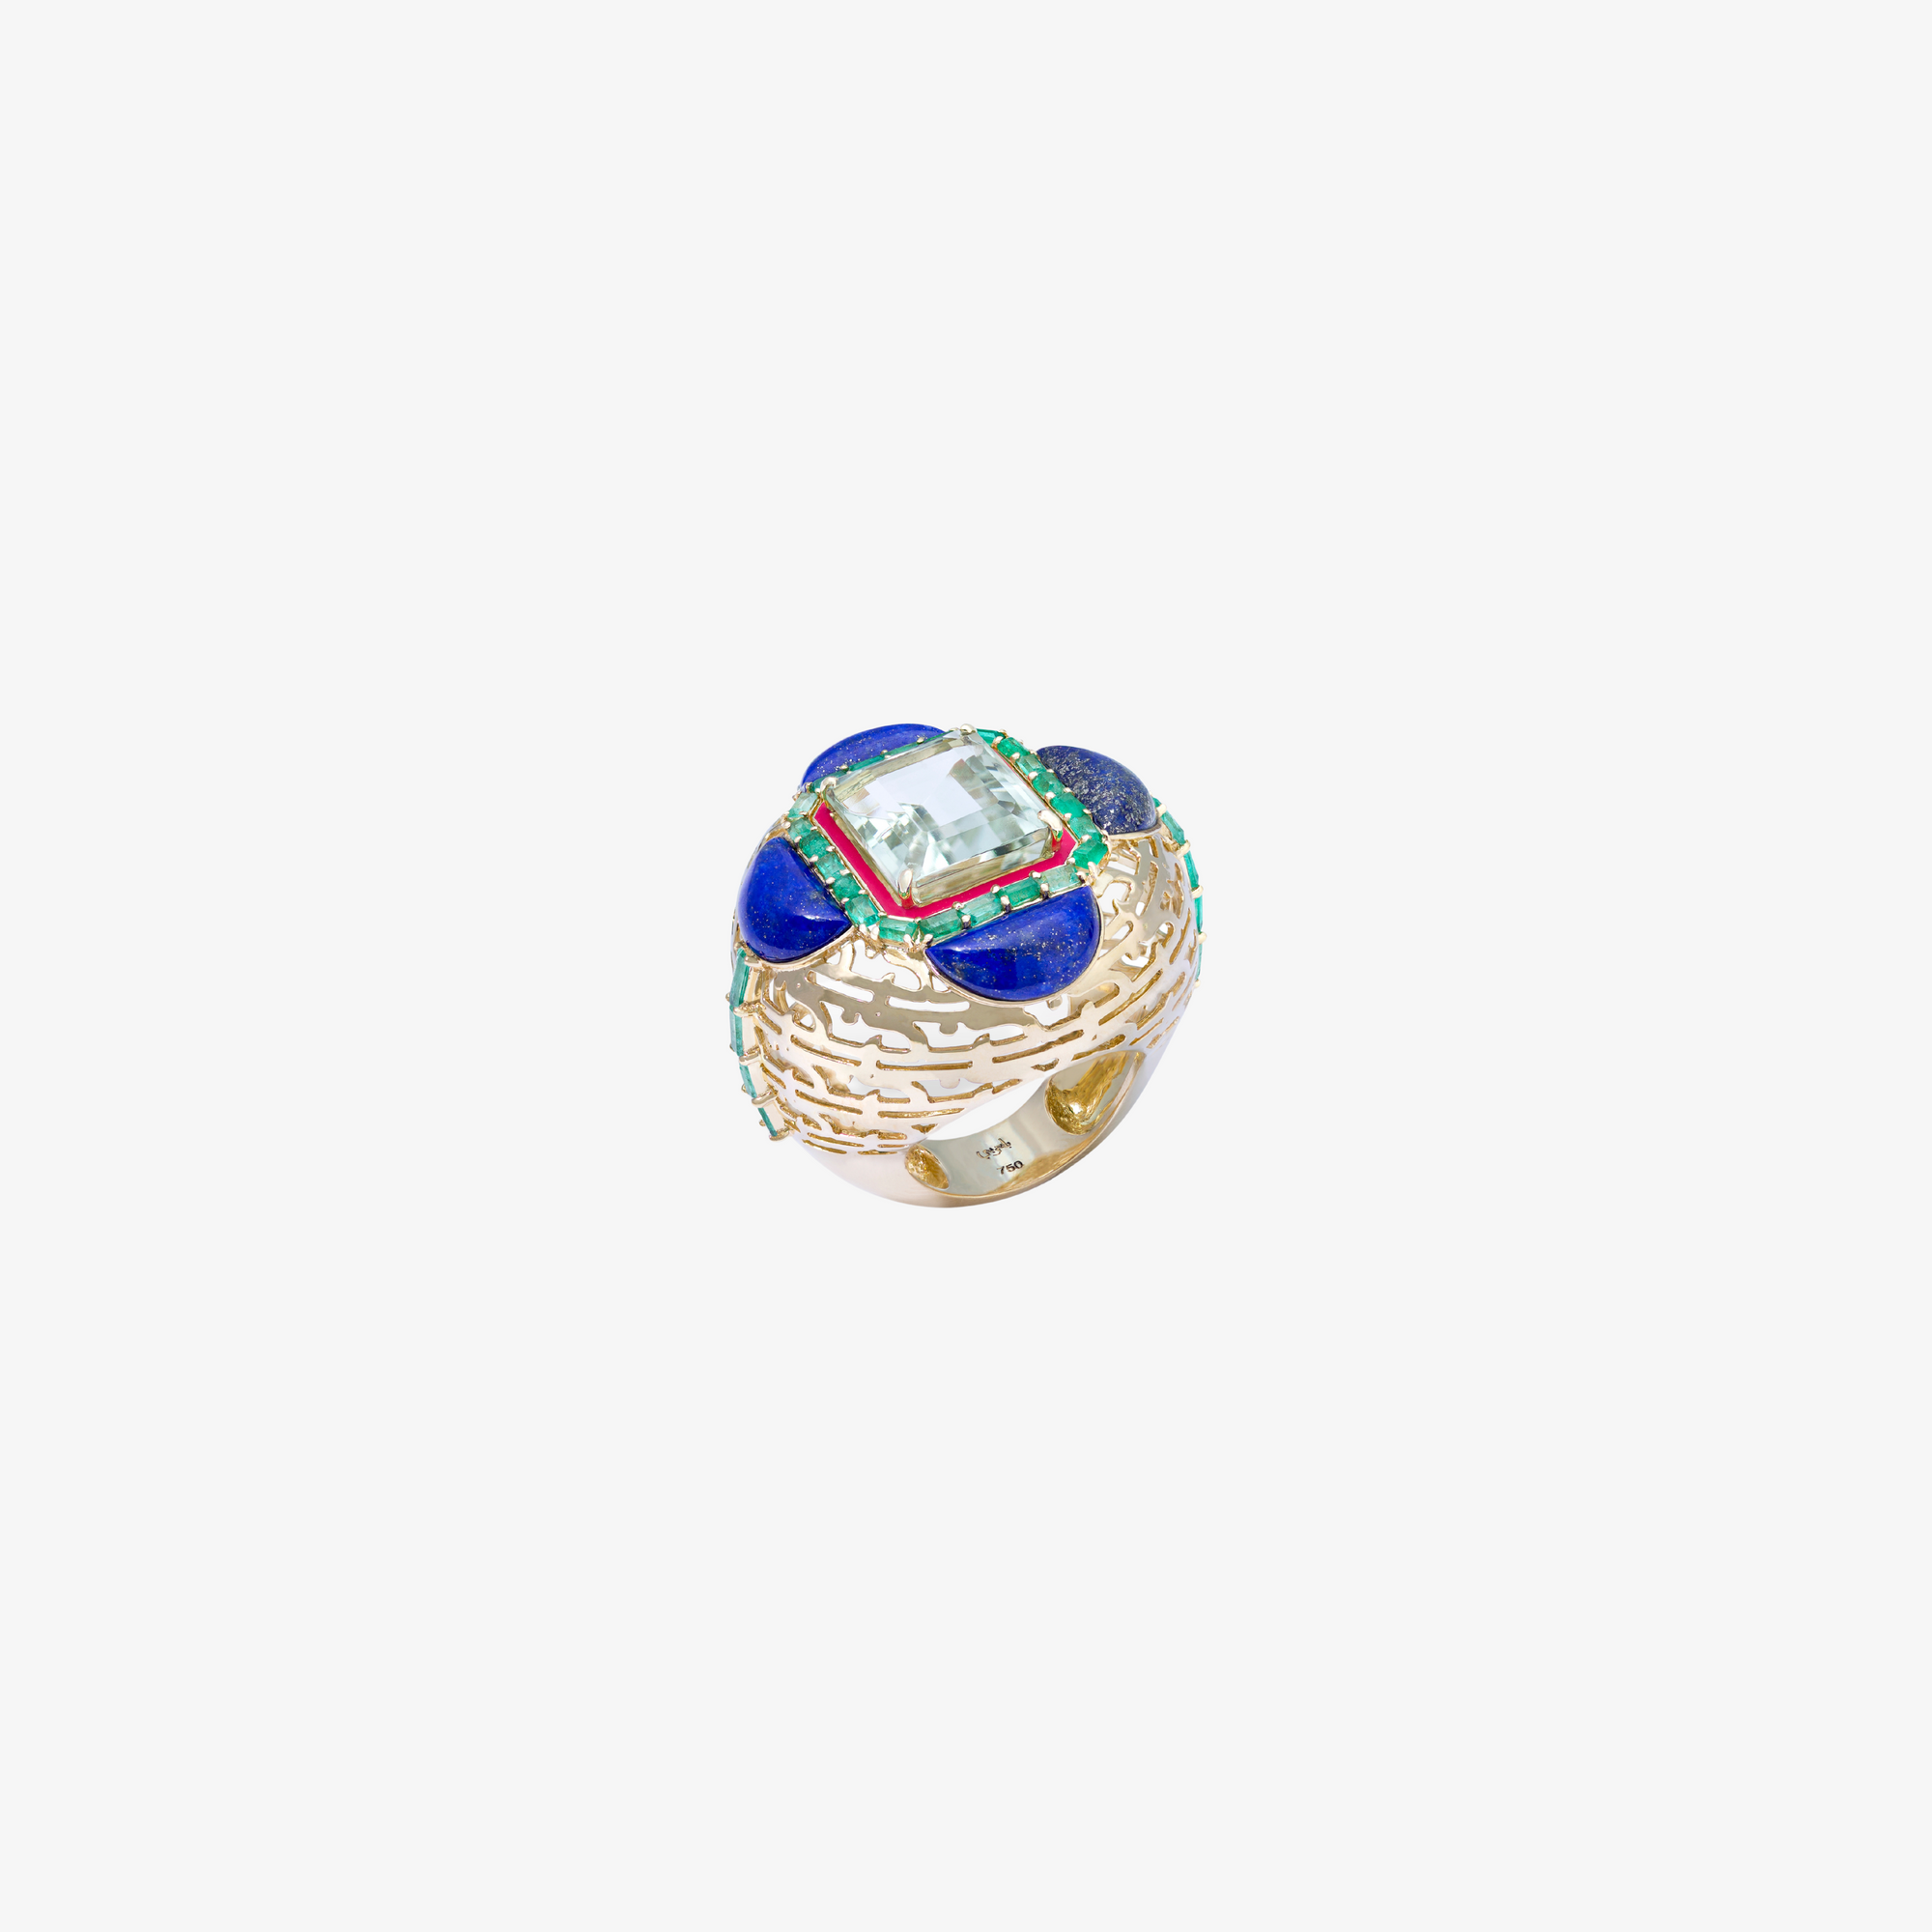 HAWA - Gold, Lapis Lazuli, Aquamarine & Emerald Ring